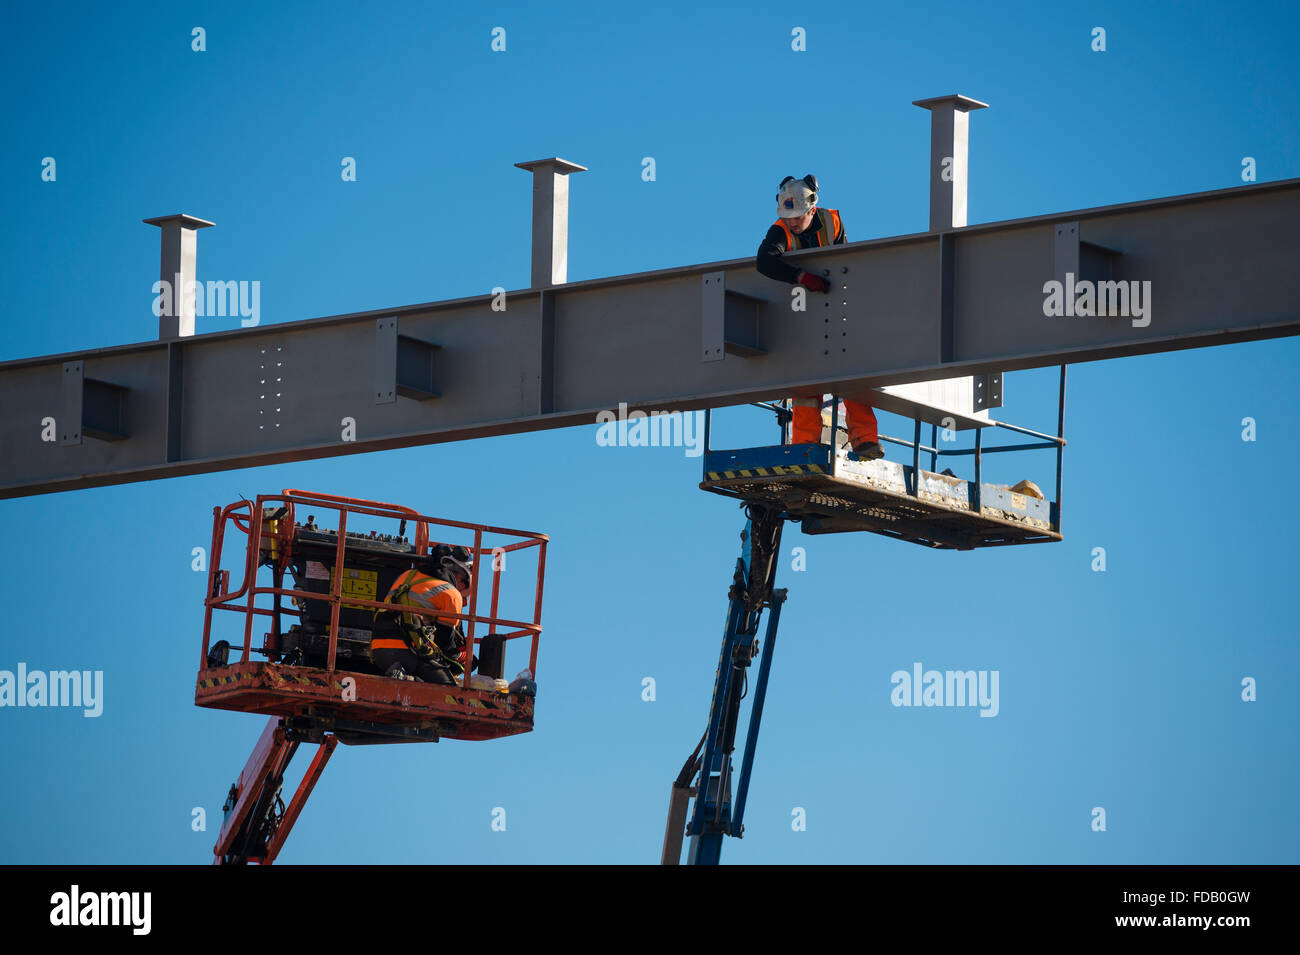 Les hommes travaillent en hauteur de 'grue' plates-formes élevées - construire ensemble le cadre en acier de boulonnage d'un nouveau bâtiment qui abritera une succursale de supermarché Tesco et Marks & Spencer store, sur un ciel bleu clair jour, Aberystwyth Wales UK Banque D'Images